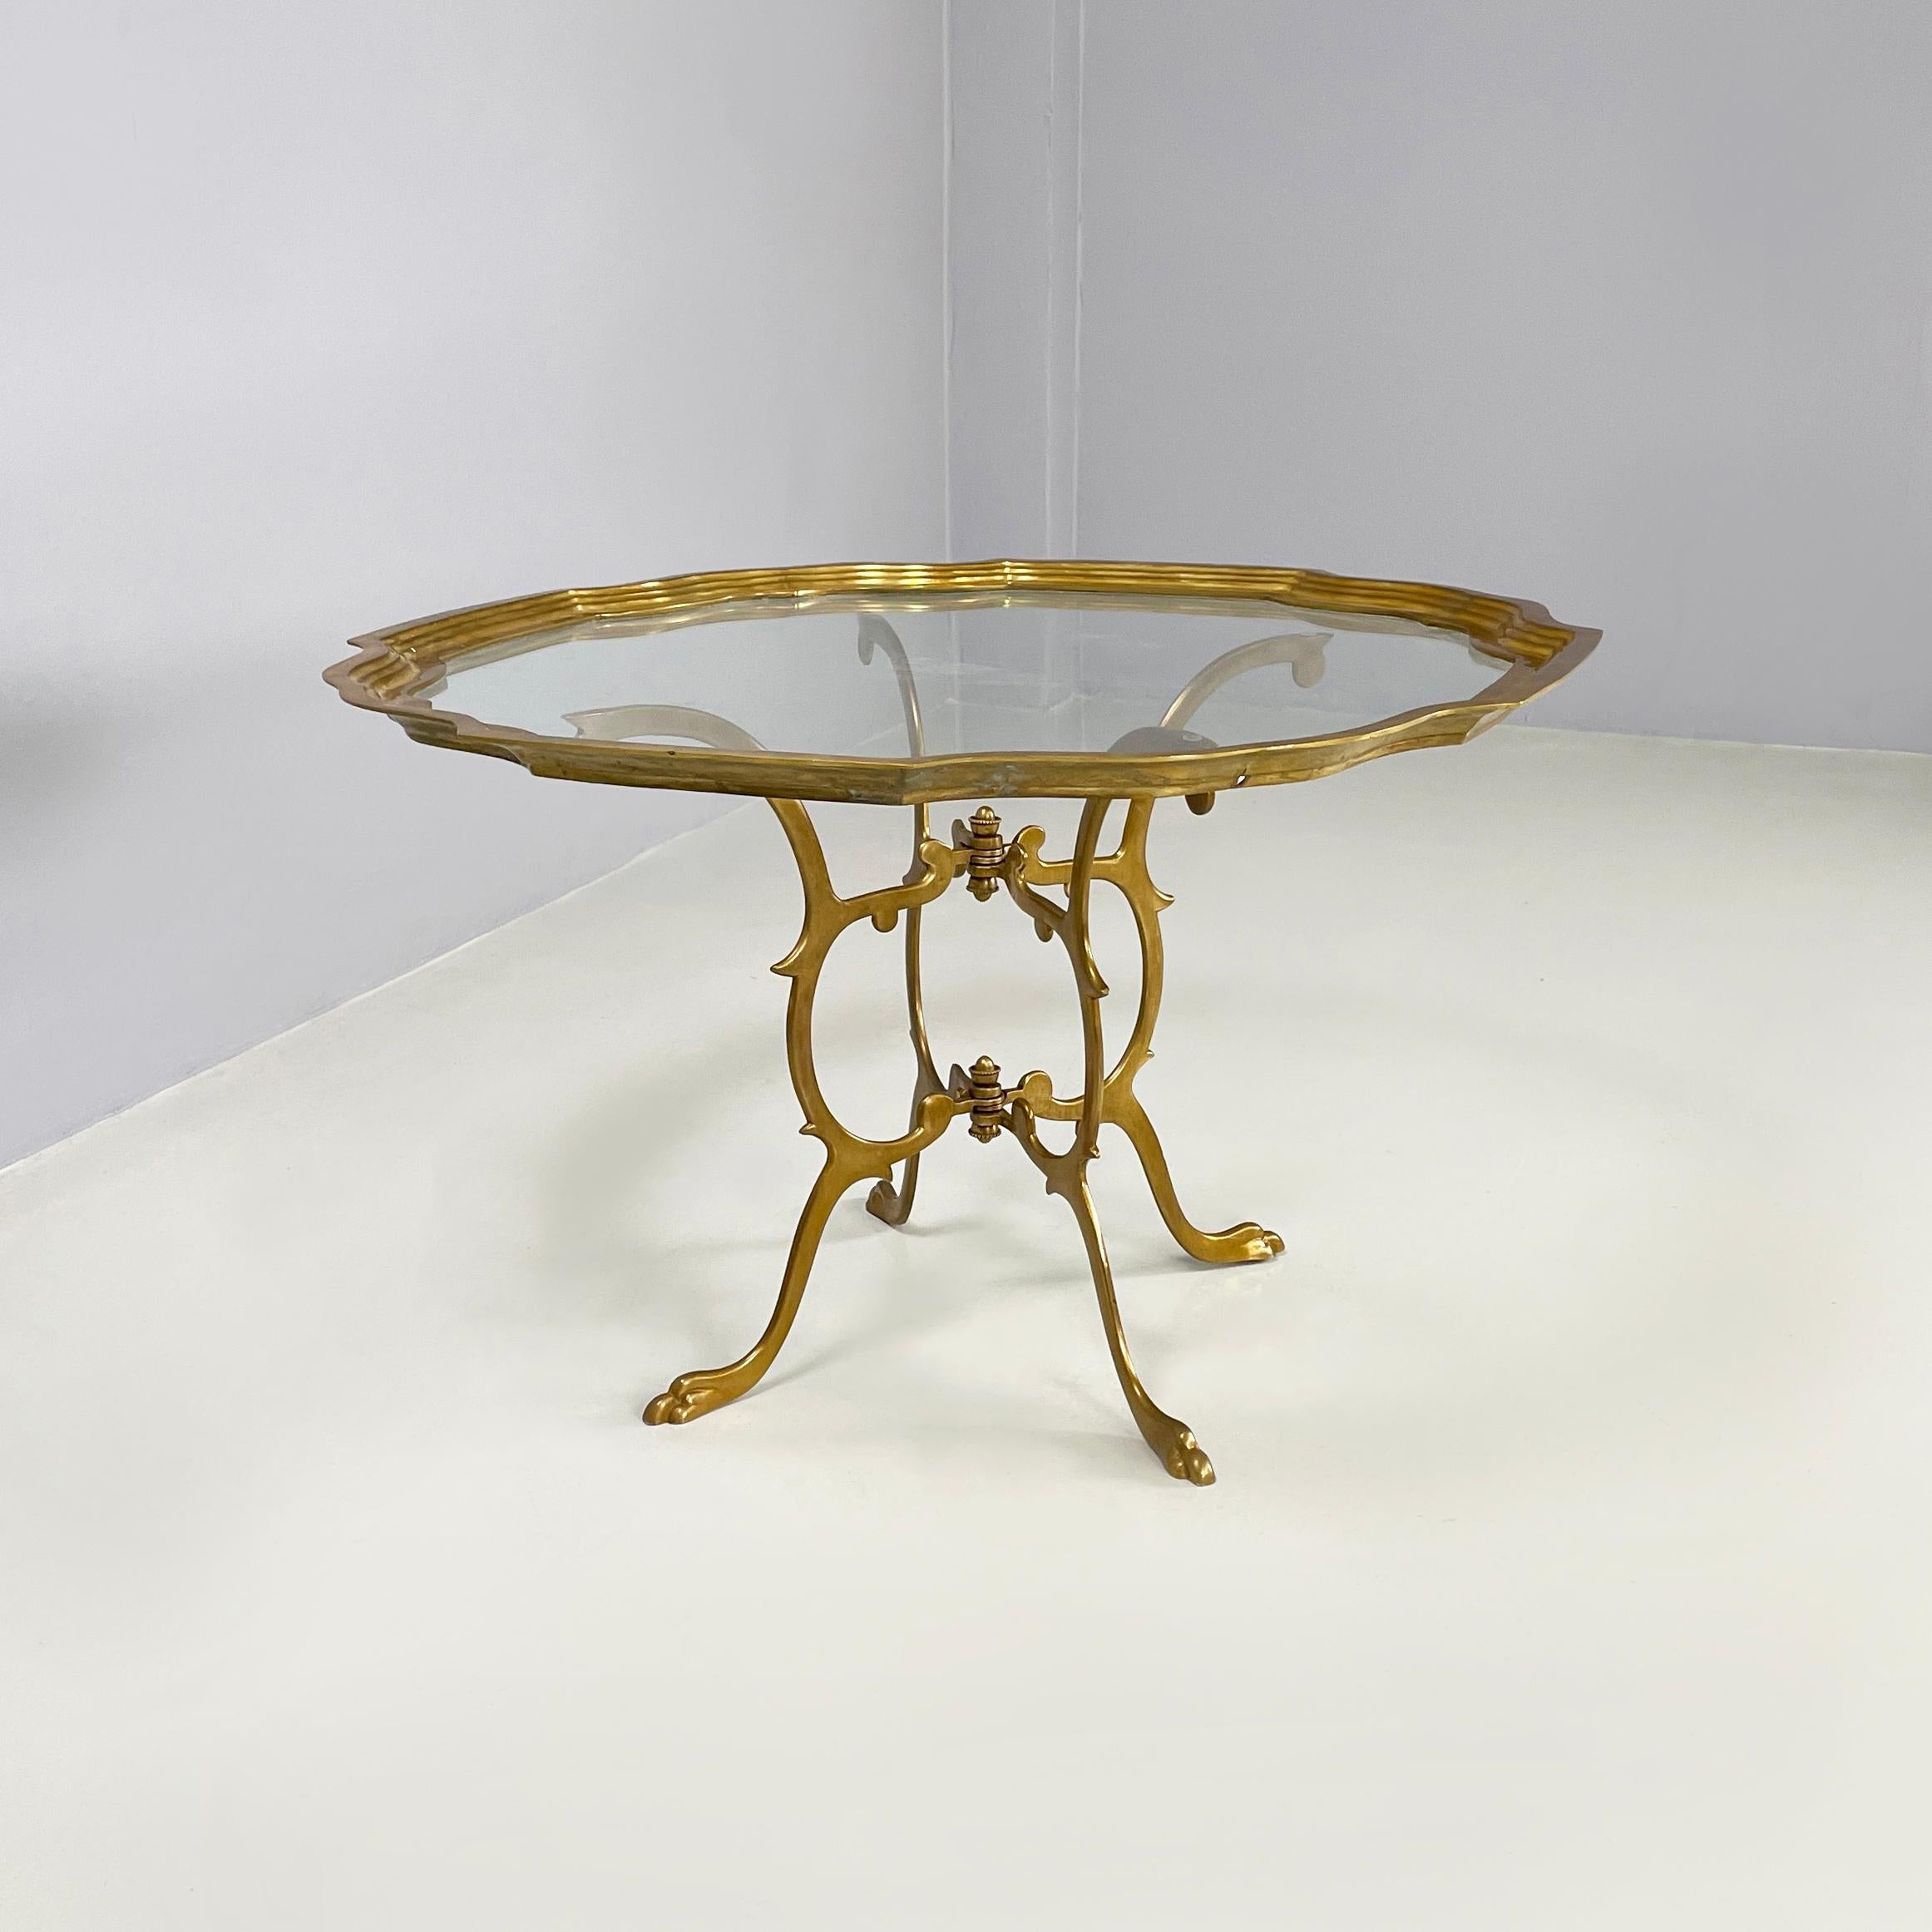 Table basse italienne moderne du milieu du siècle dernier en verre et laiton, années 1960
Table basse avec plateau en verre de forme géométrique et profilé en laiton en porte-à-faux. La base sur laquelle repose le plateau est constituée de 4 pieds